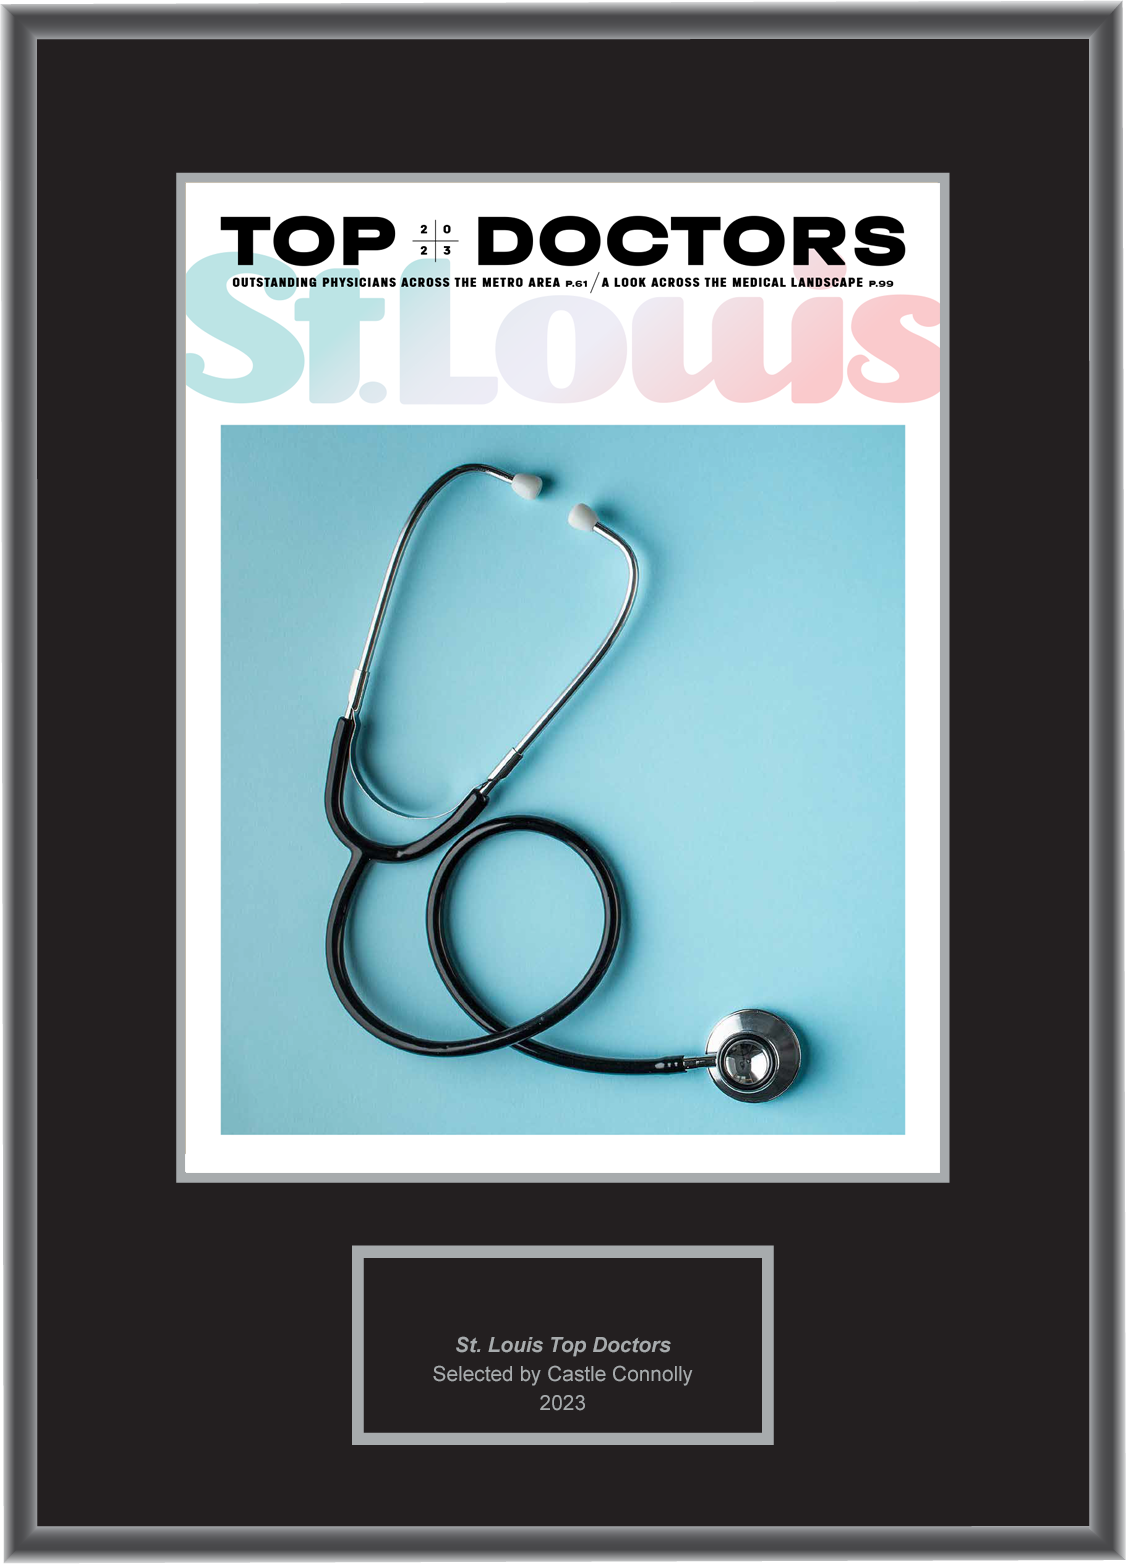 St. Louis Magazine Top Doctors 2023 - Plaque